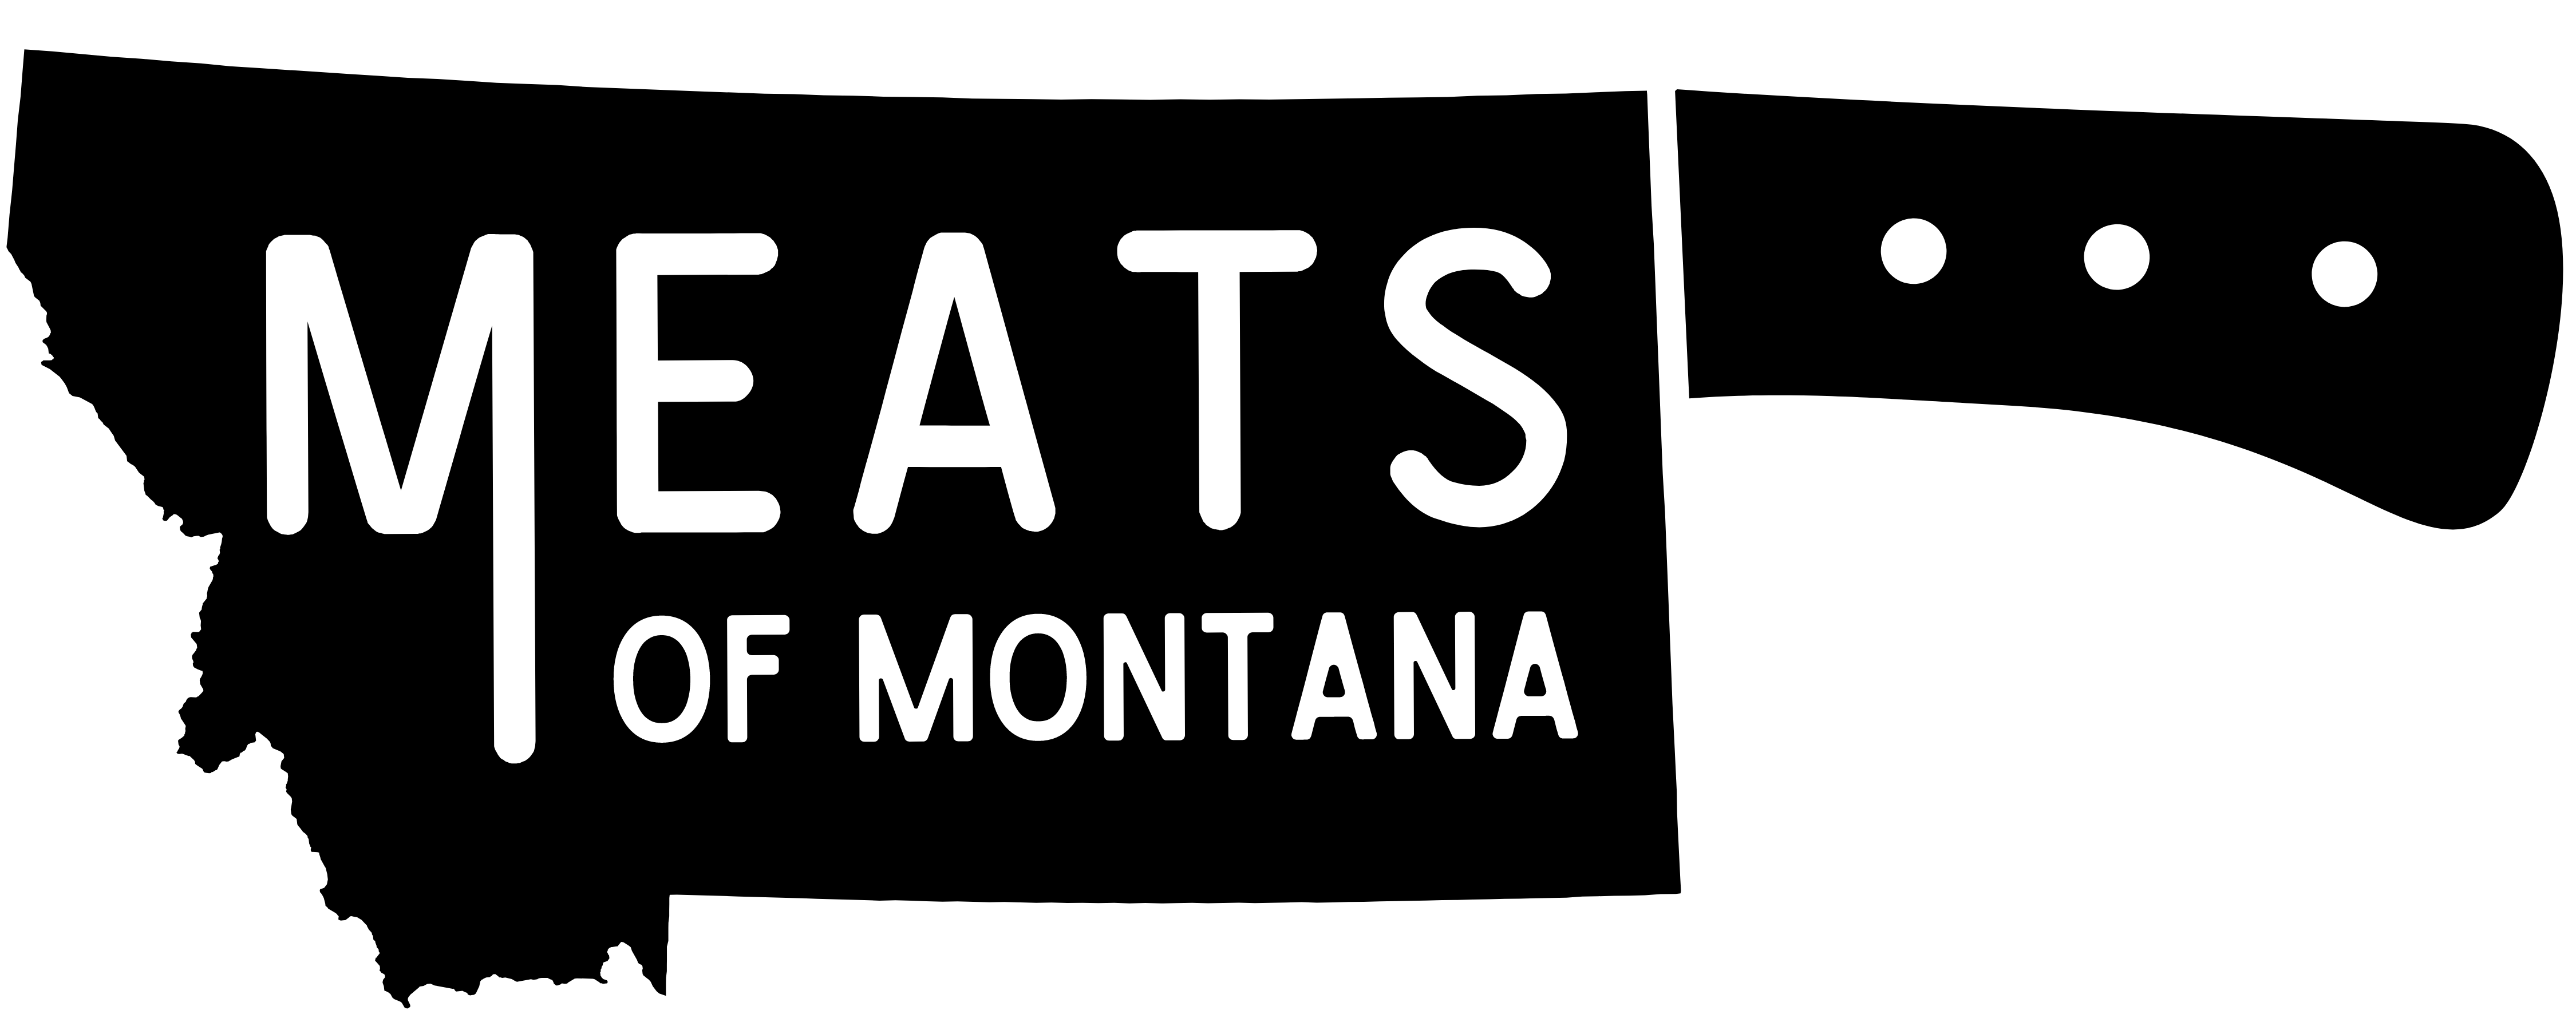 Meats_of_Montana_Hi_Res_Black